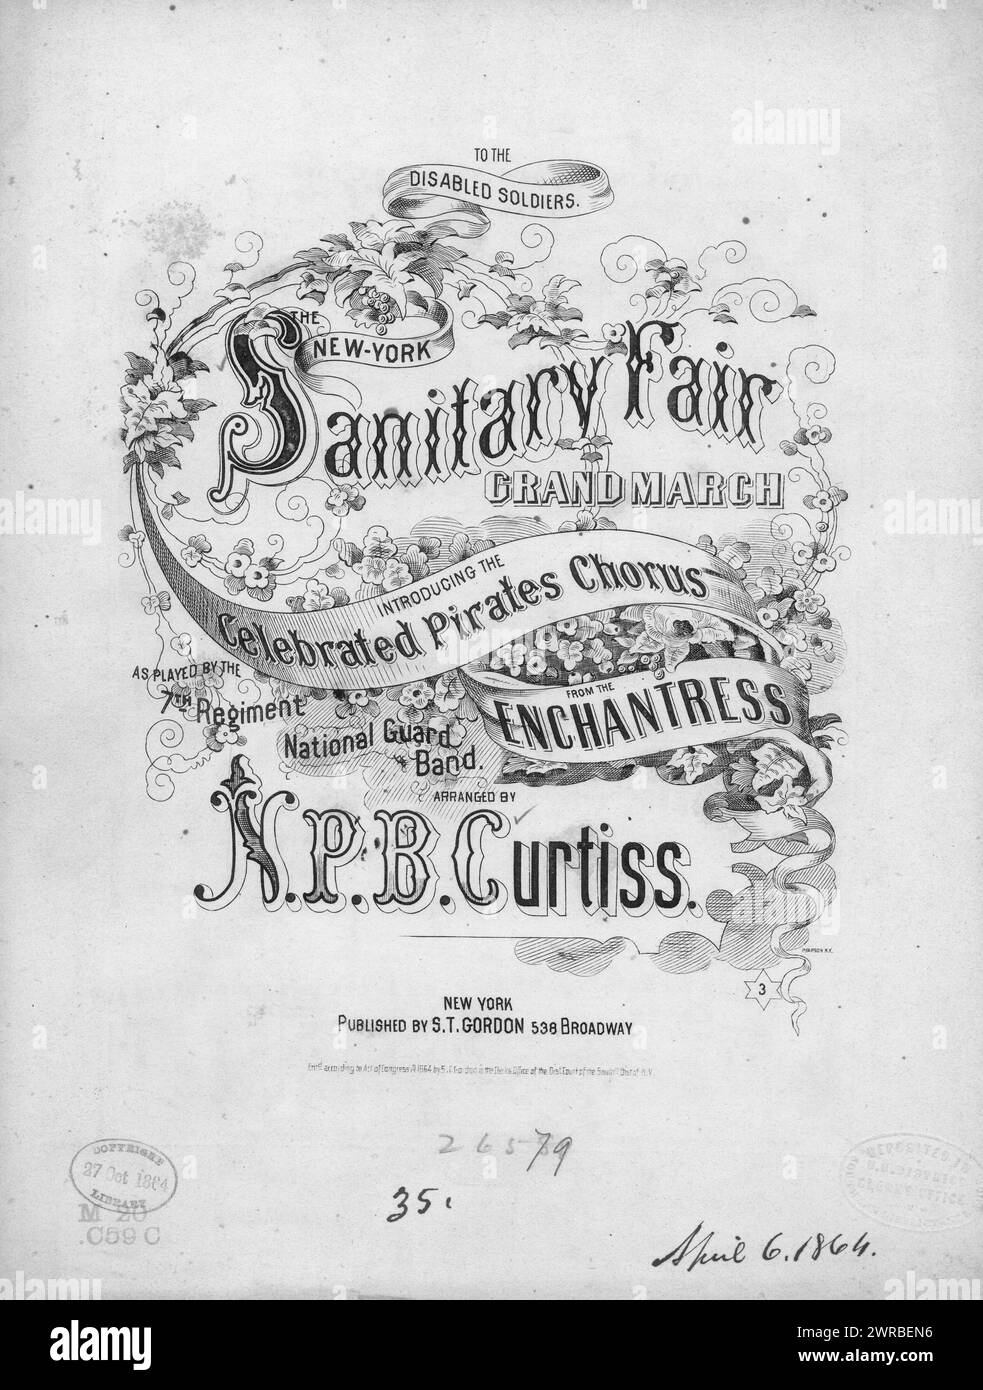 La foire sanitaire de New York, grande marche, Curtiss, N. P. B. (compositeur), S. T. Gordon, New York, 1864., États-Unis, histoire, Guerre civile, 1861-1865, chansons et musique Banque D'Images